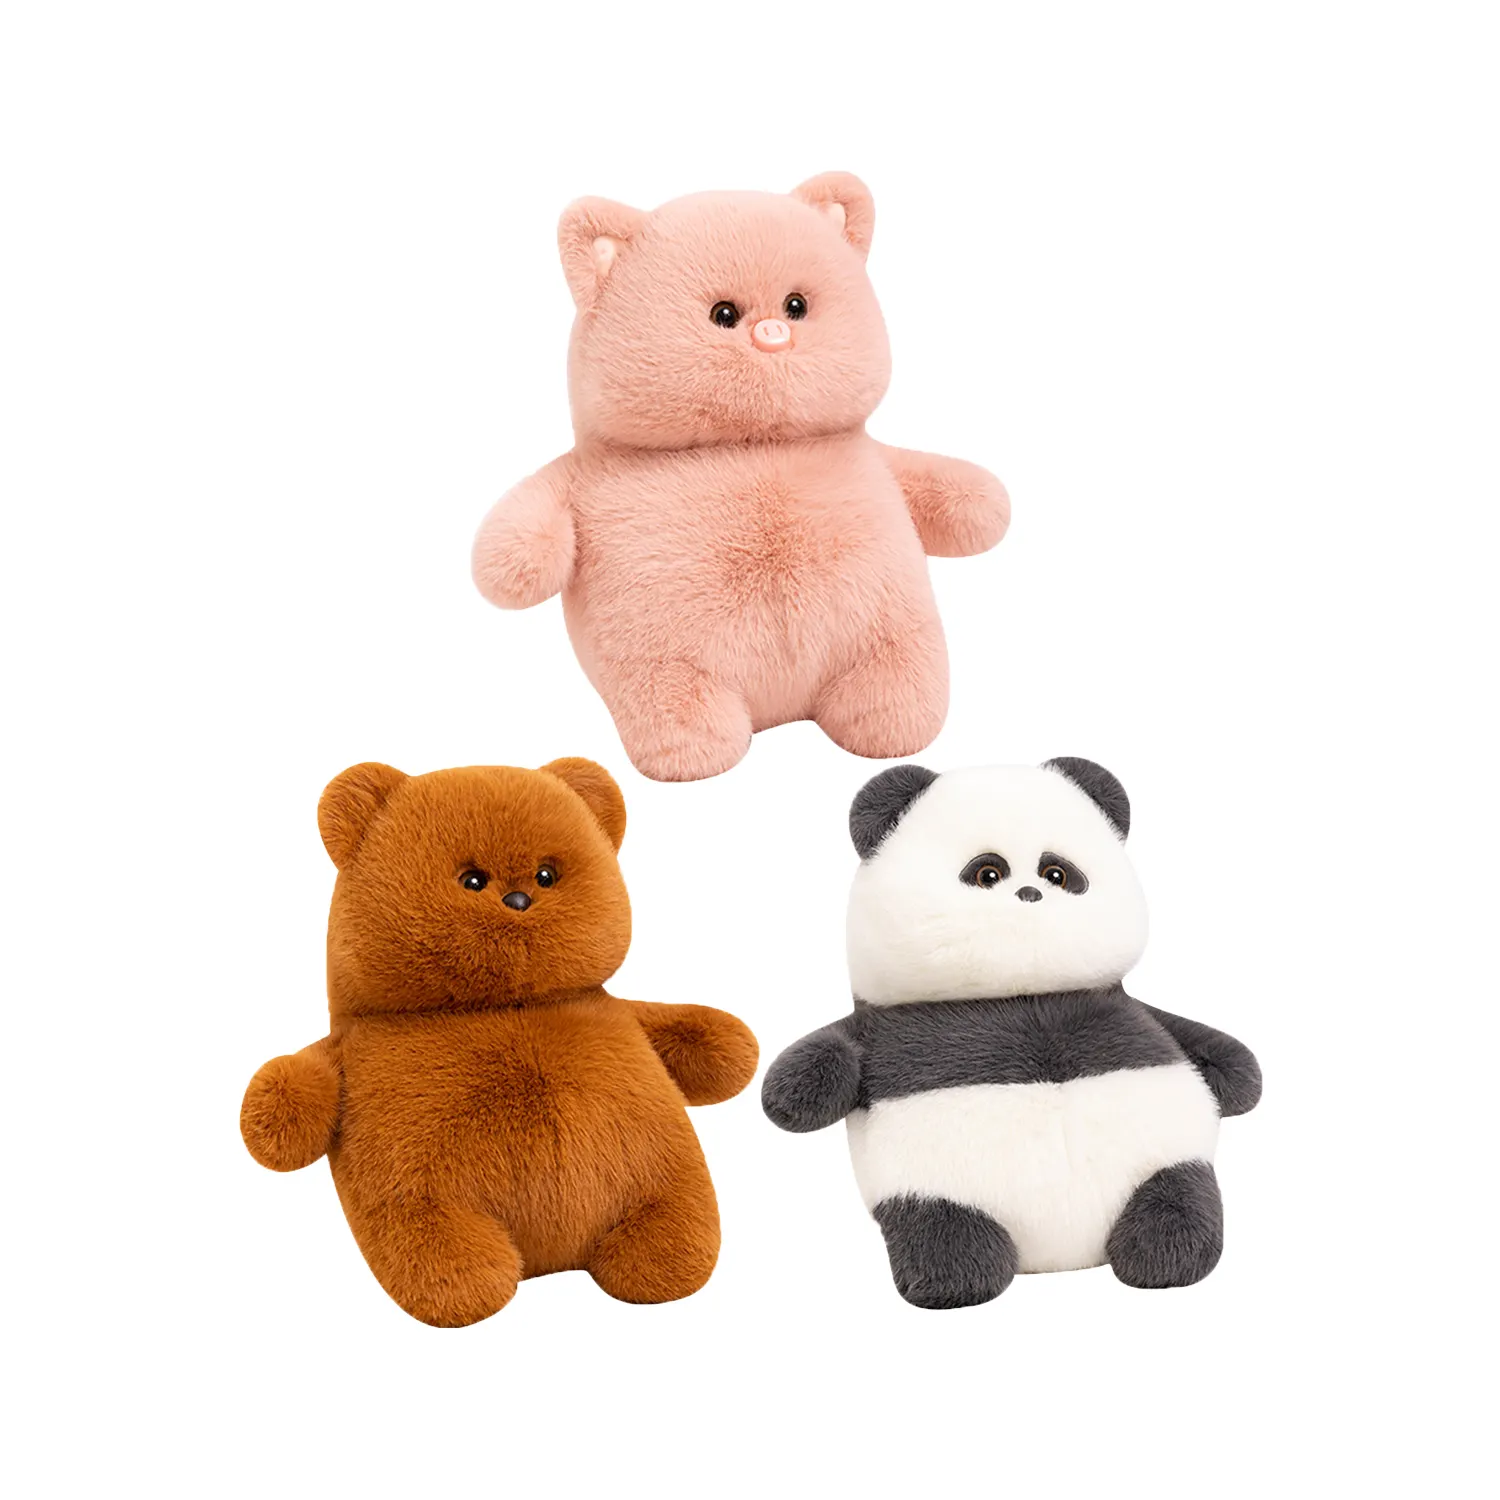 Premium kalite kabarık tembel domuz peluş oyuncaklar tombul Panda dolması oyuncaklar ayı oyuncak ayı yumuşak bebekler Yangzhou fabrika toptan hediyeler